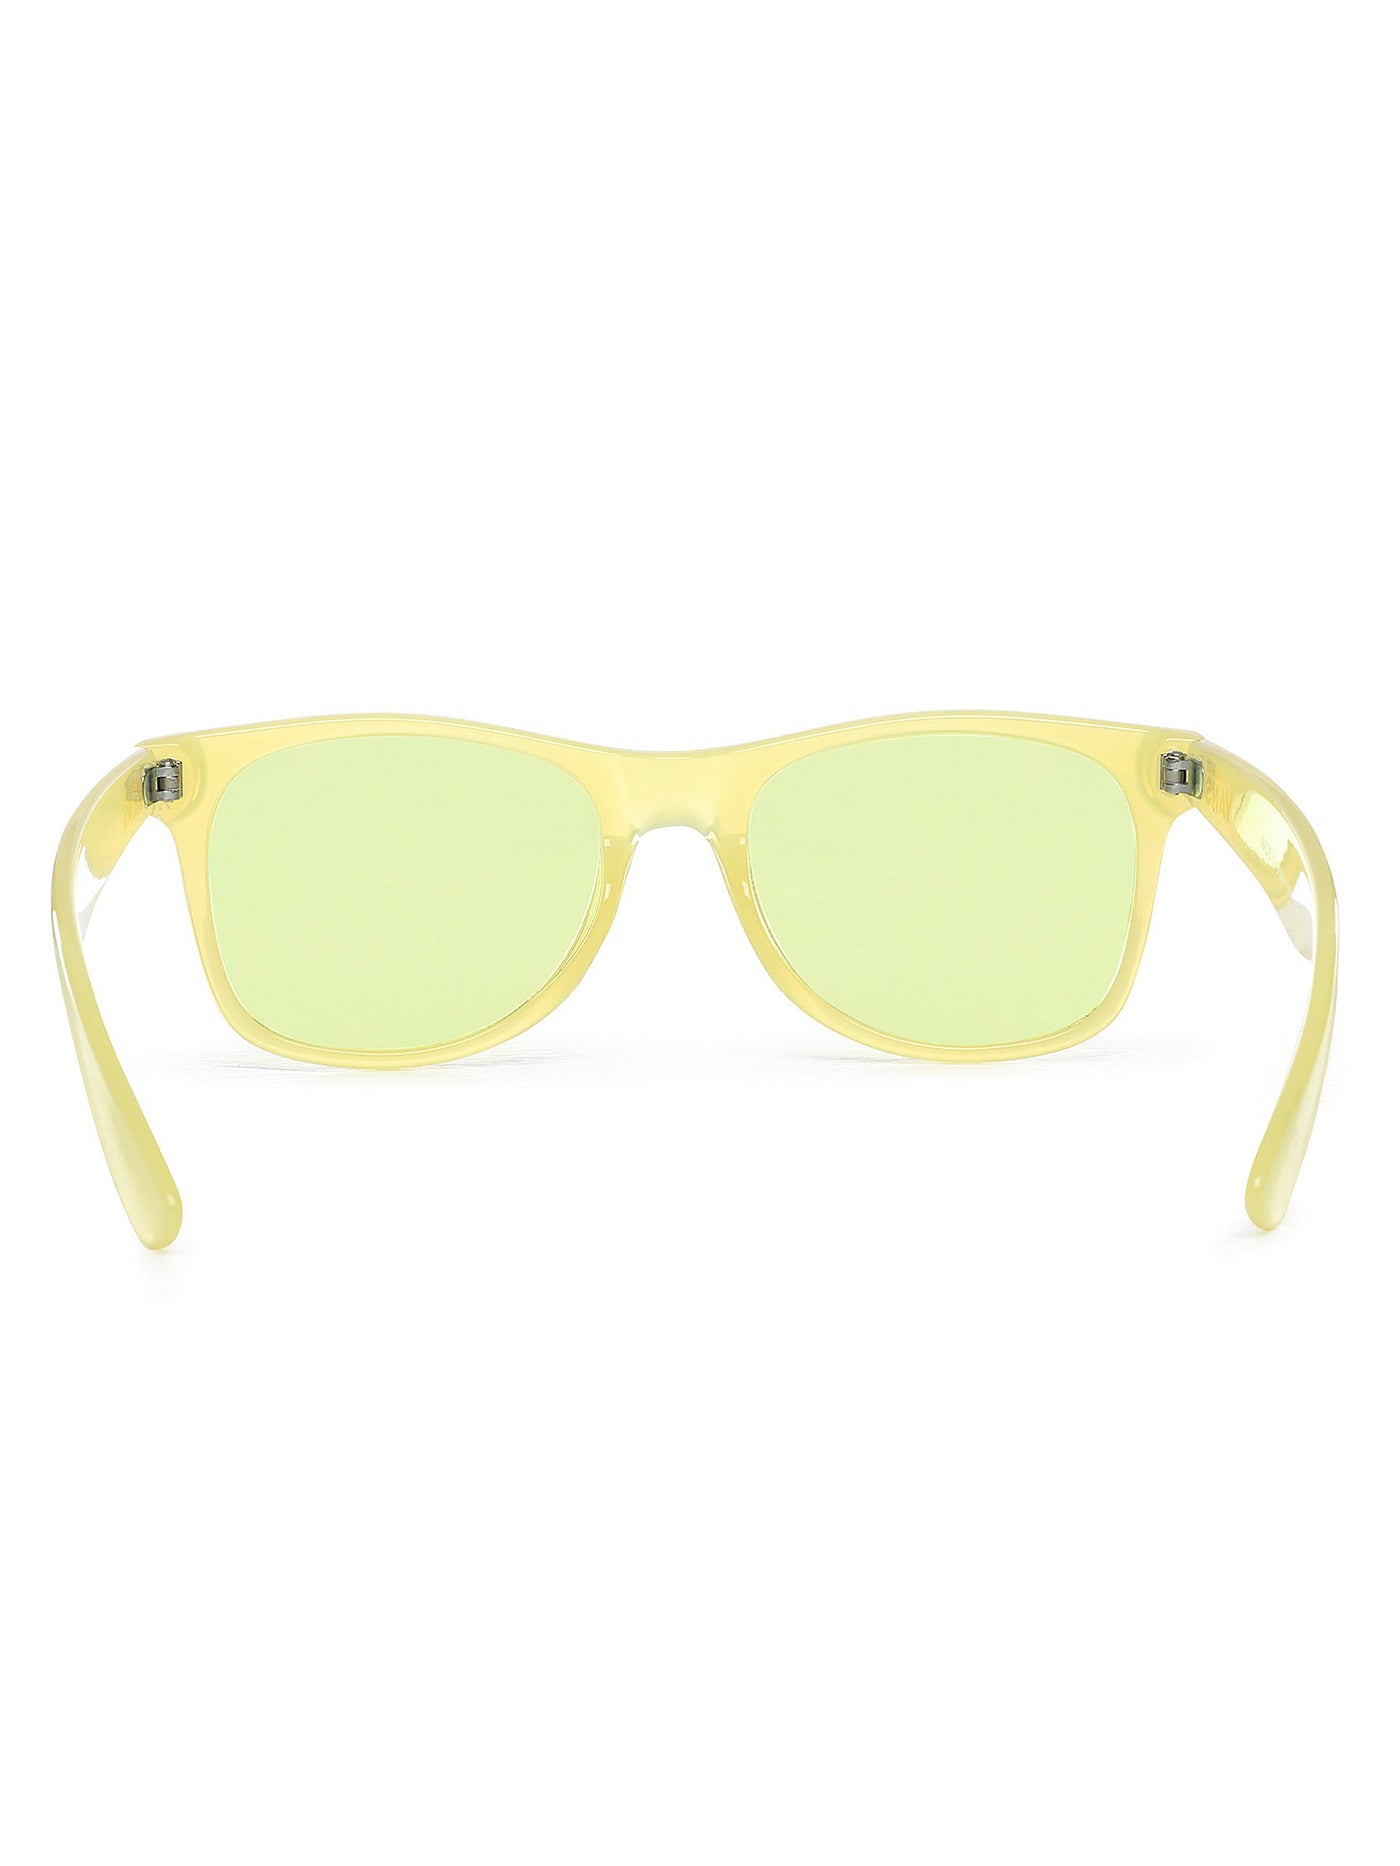 Vans Spicoli Flat Sunglasses